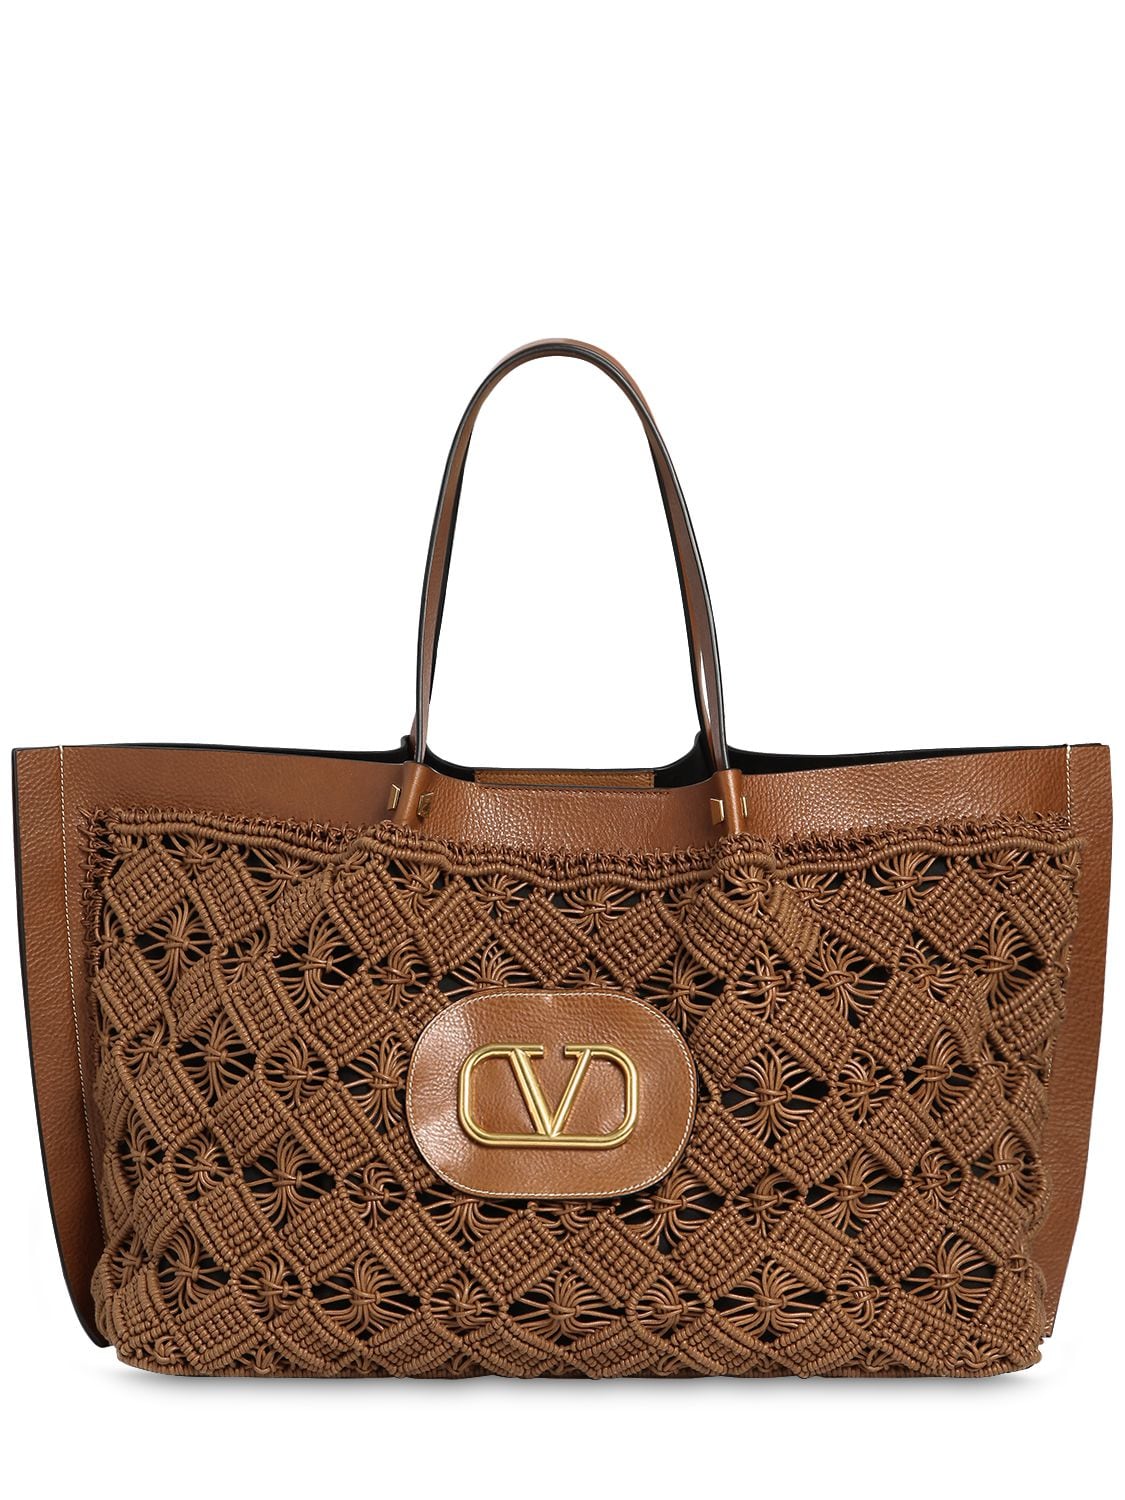 Valentino Garavani Logo Macramé & Leather Escape Tote Bag In Tan